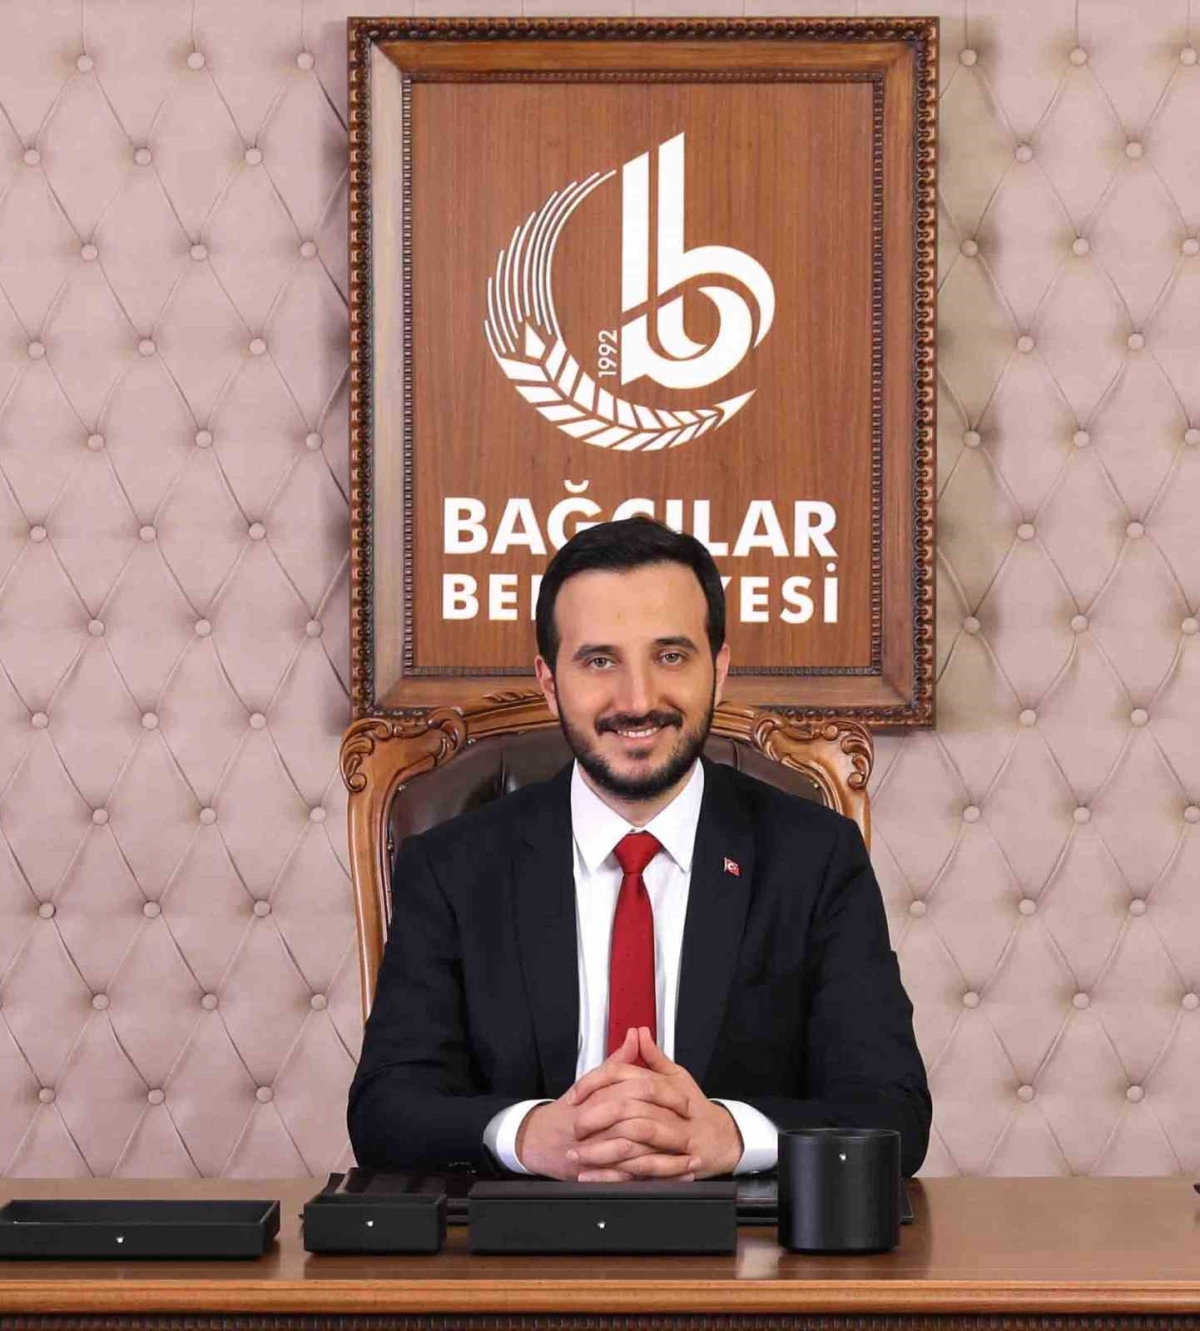 Bağcılar Belediye Başkanı Özdemir: “Şehrin batı yakasının ulaşımda mağduriyet yaşamasının tek sebebi İBB’dir”
